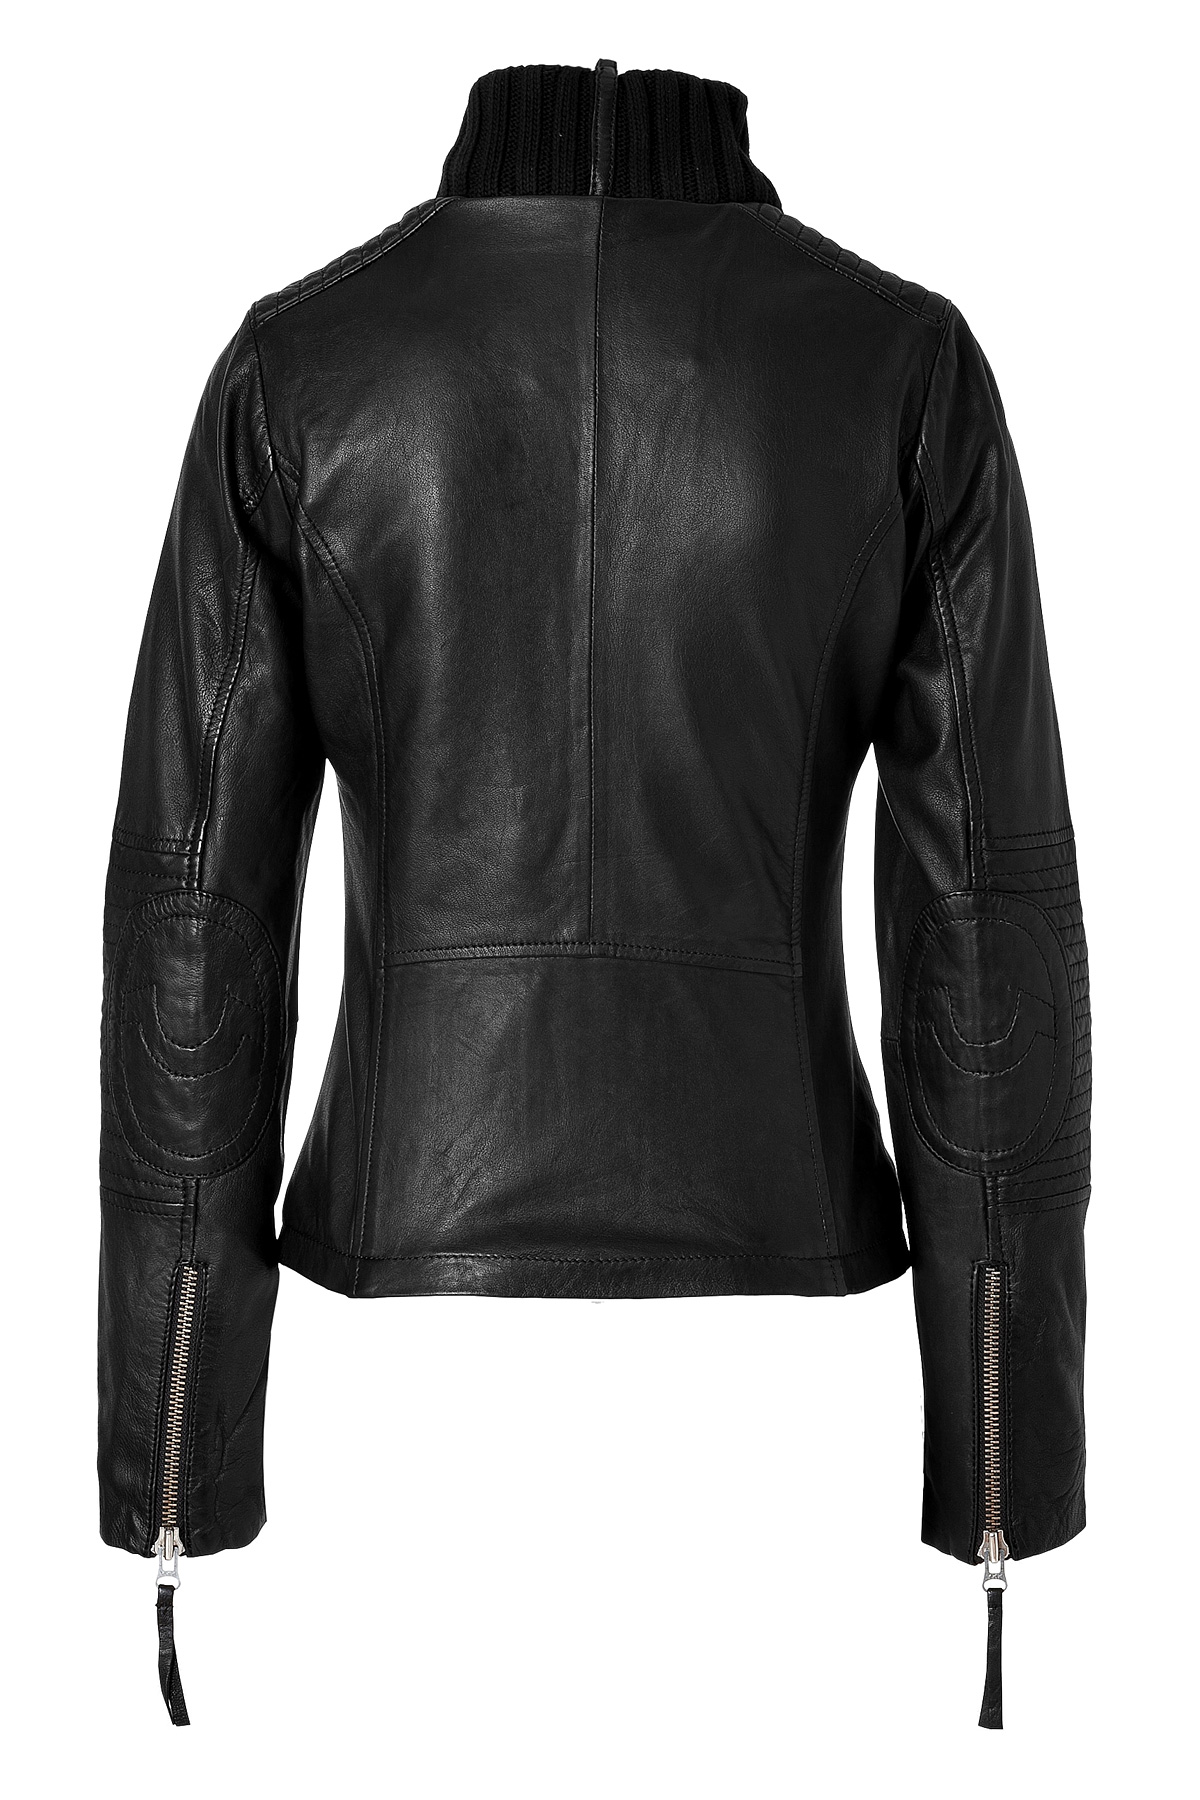 Lyst - True Religion Leather Biker Jacket in Black in Black